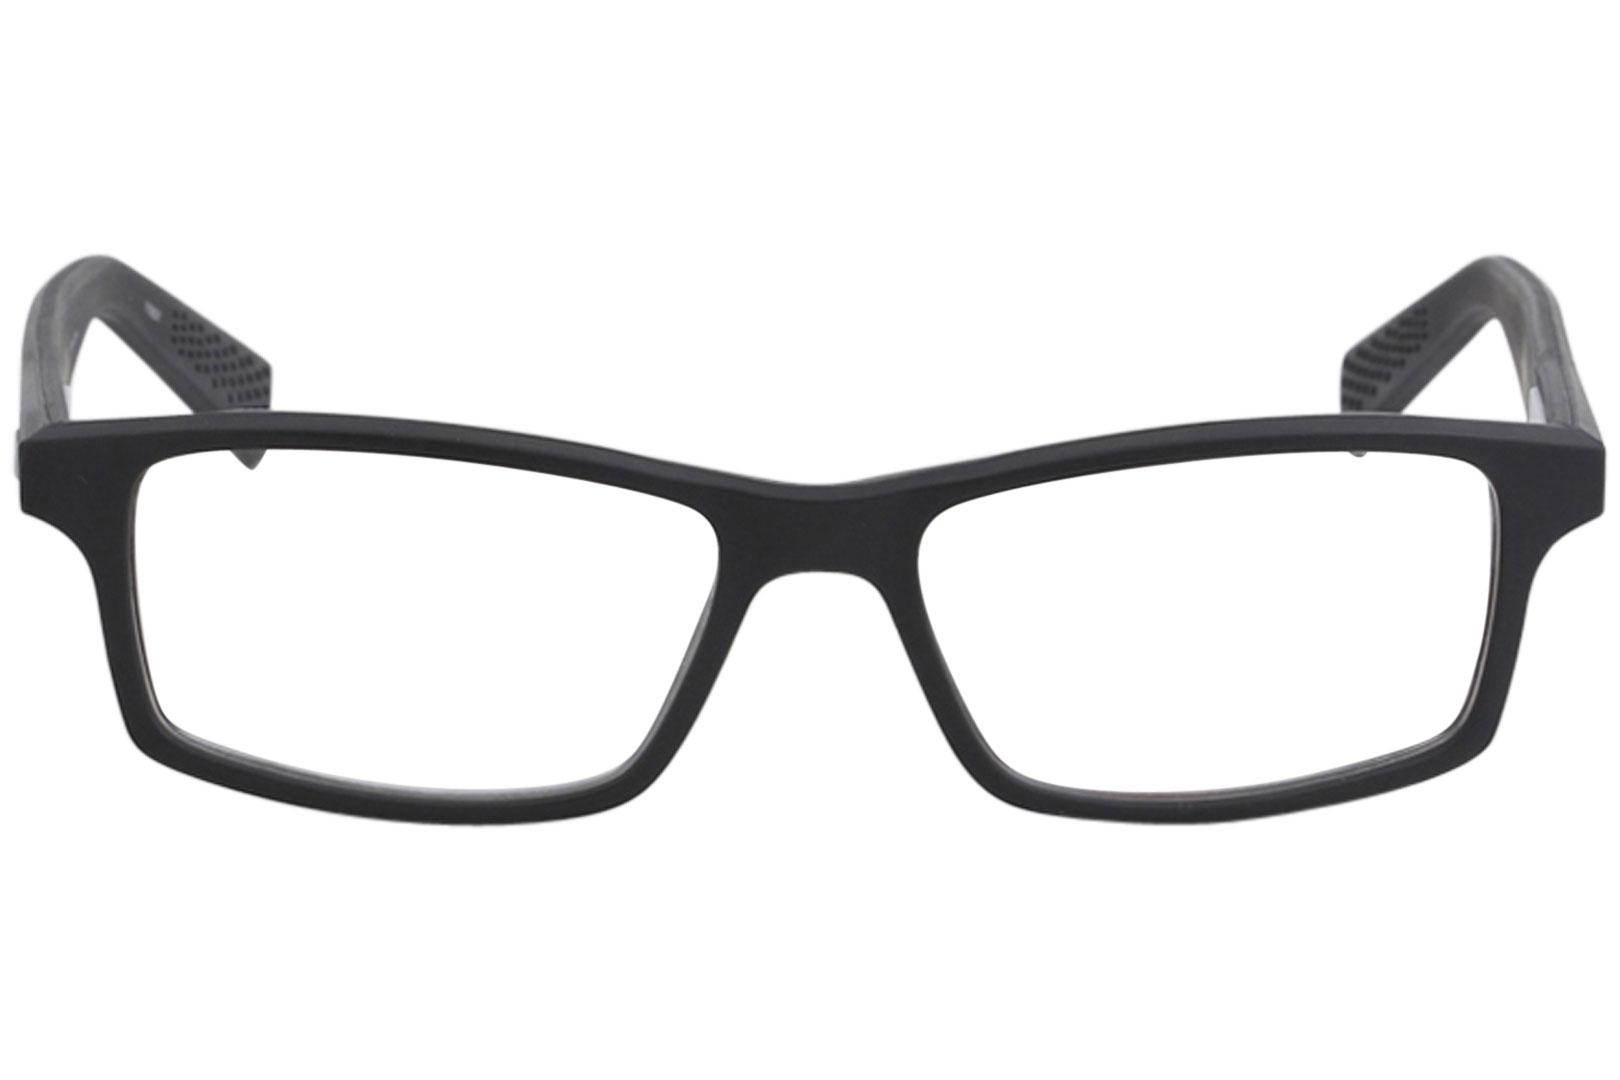 Nike Flexon Men's Eyeglasses 4259 Full Rim Optical Frame | JoyLot.com